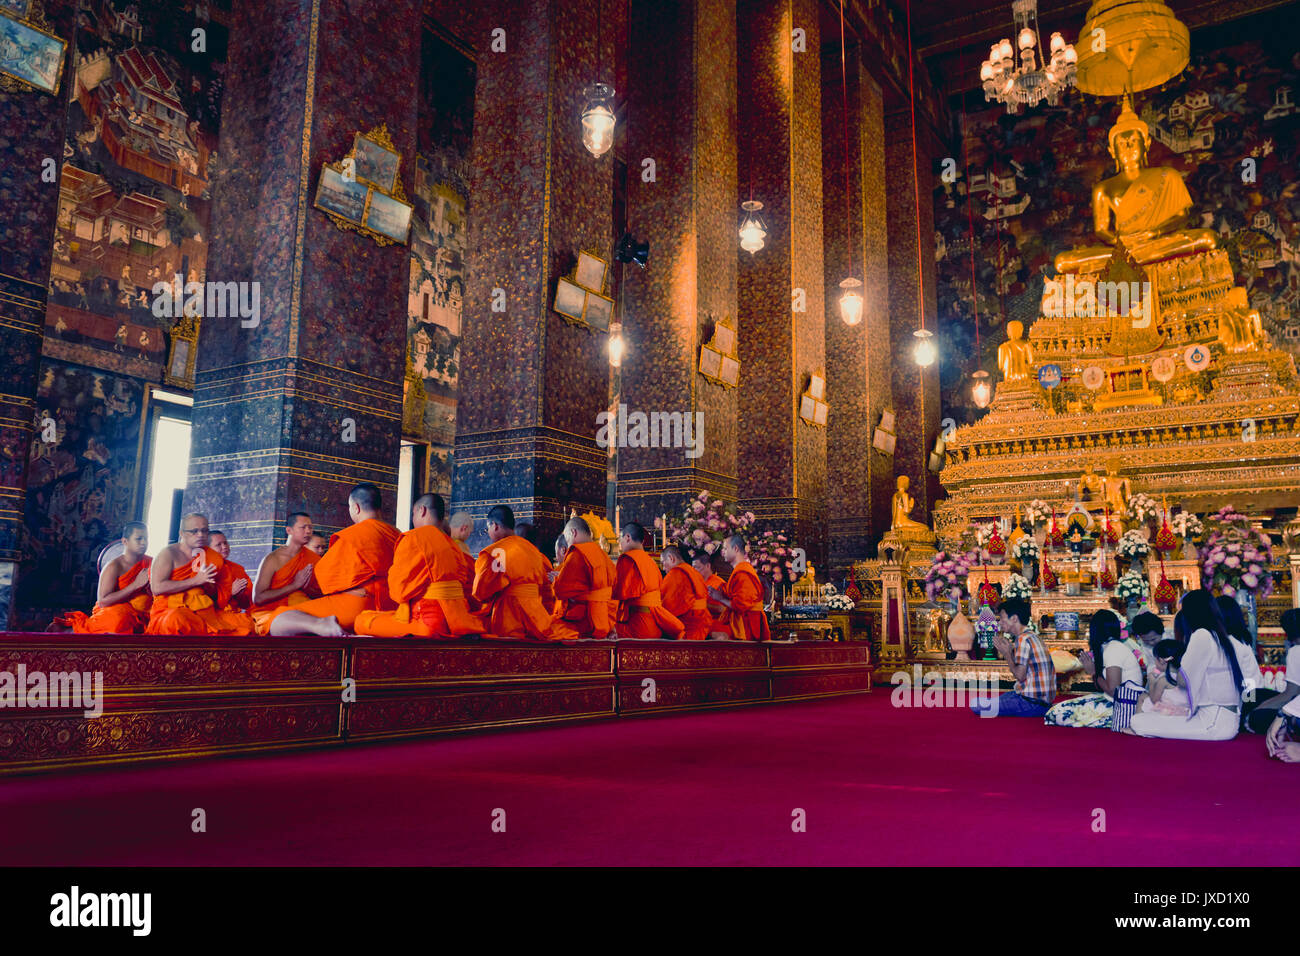 BANGKOK, Tailandia - 26 dicembre 2016: i monaci buddisti pregano a Wat Pho tempio nella capitale della Tailandia, Bangkok. Foto Stock